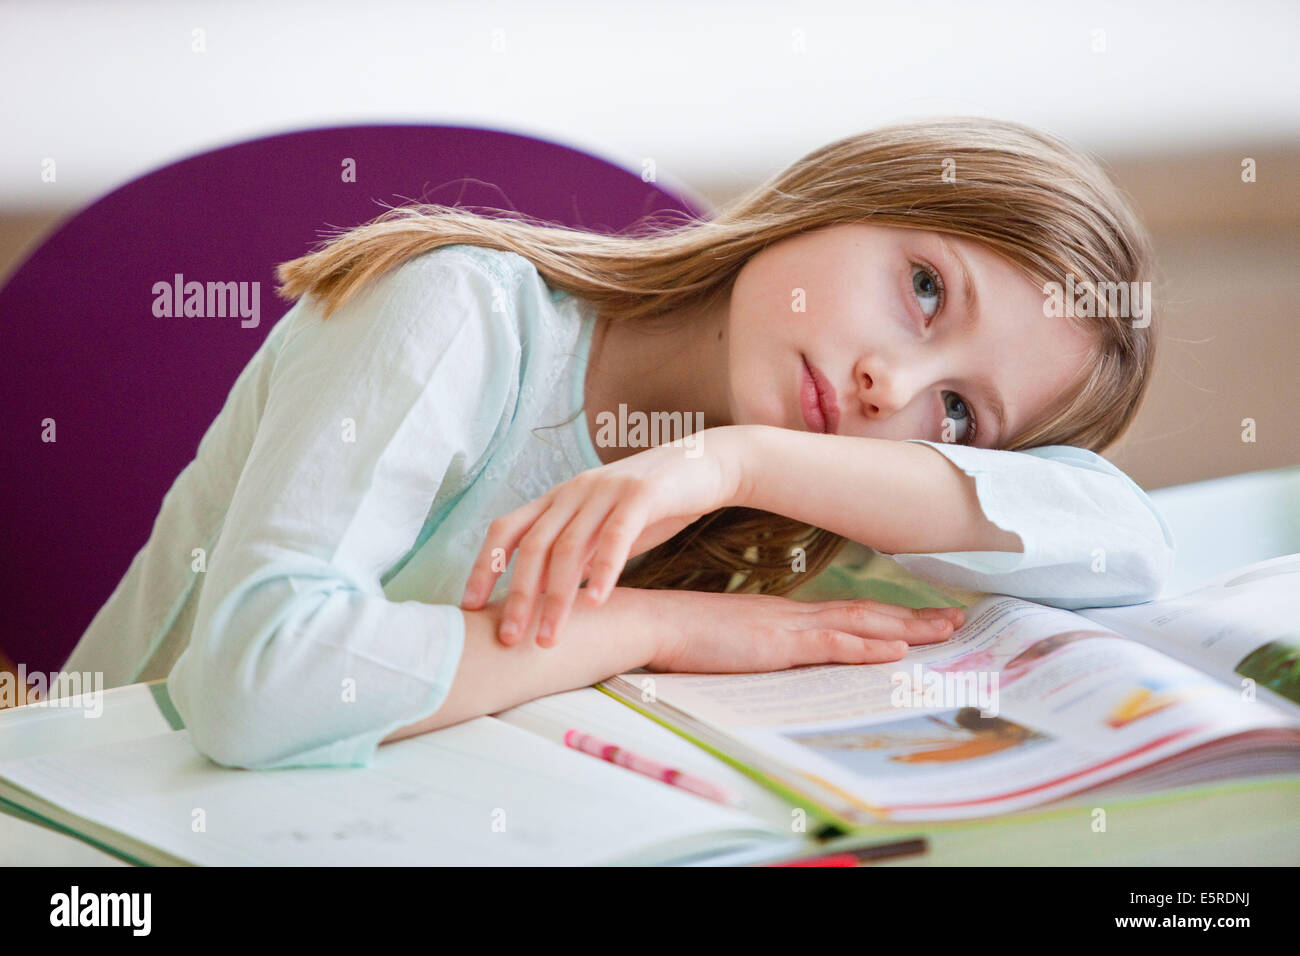 9 Jahre altes Mädchen ihre Hausaufgaben. Stockfoto